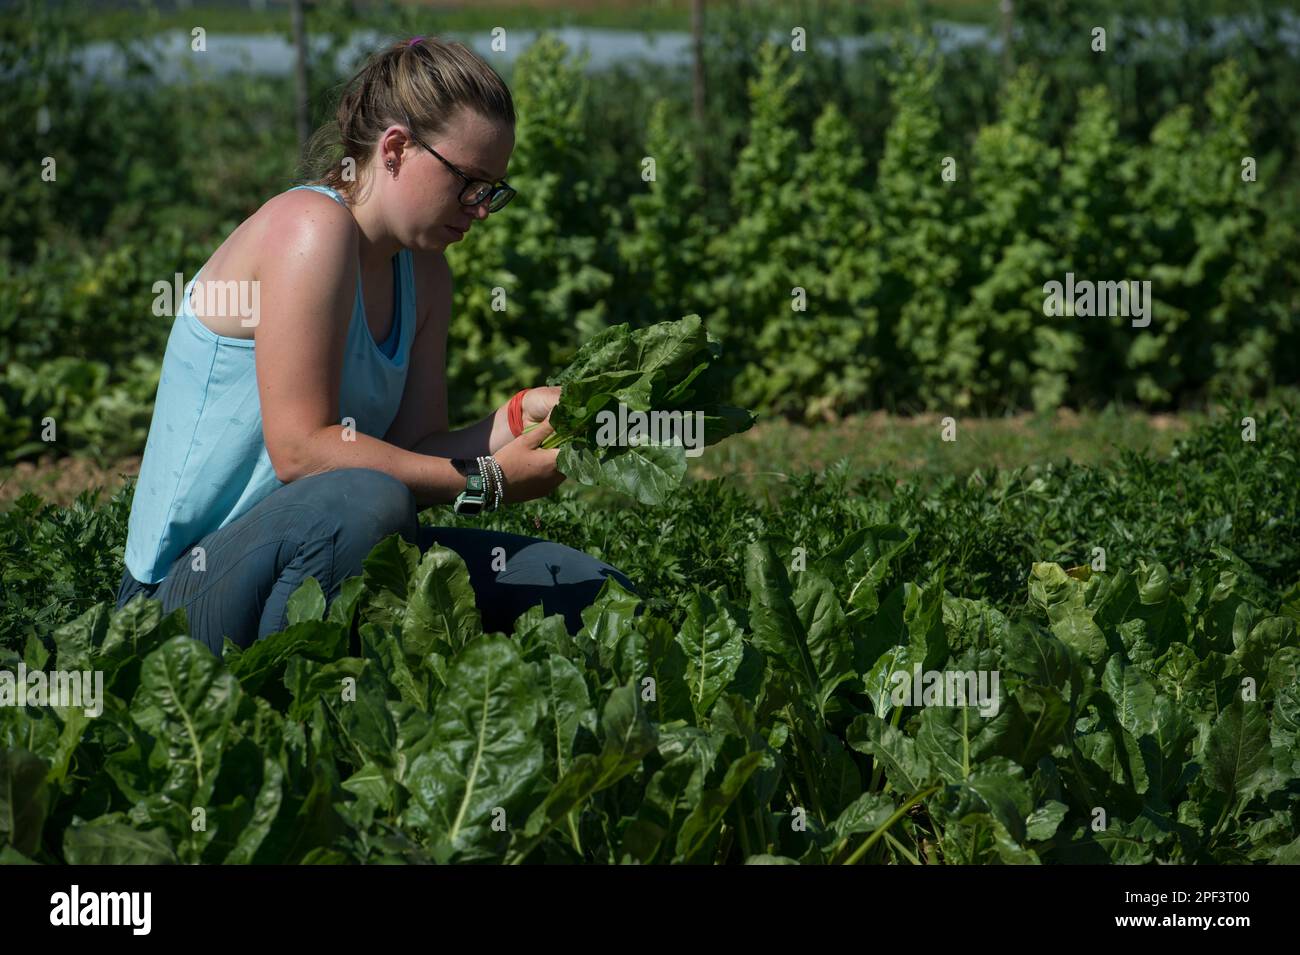 UNITED STATES - Juni 26, 2019: Kate Zoeller bringen in der frühen Jahreszeit ernten beim Bainum Family Foundation Farm in der Nähe von Middelburg. Pflanzen, die in der heutigen Ra Stockfoto